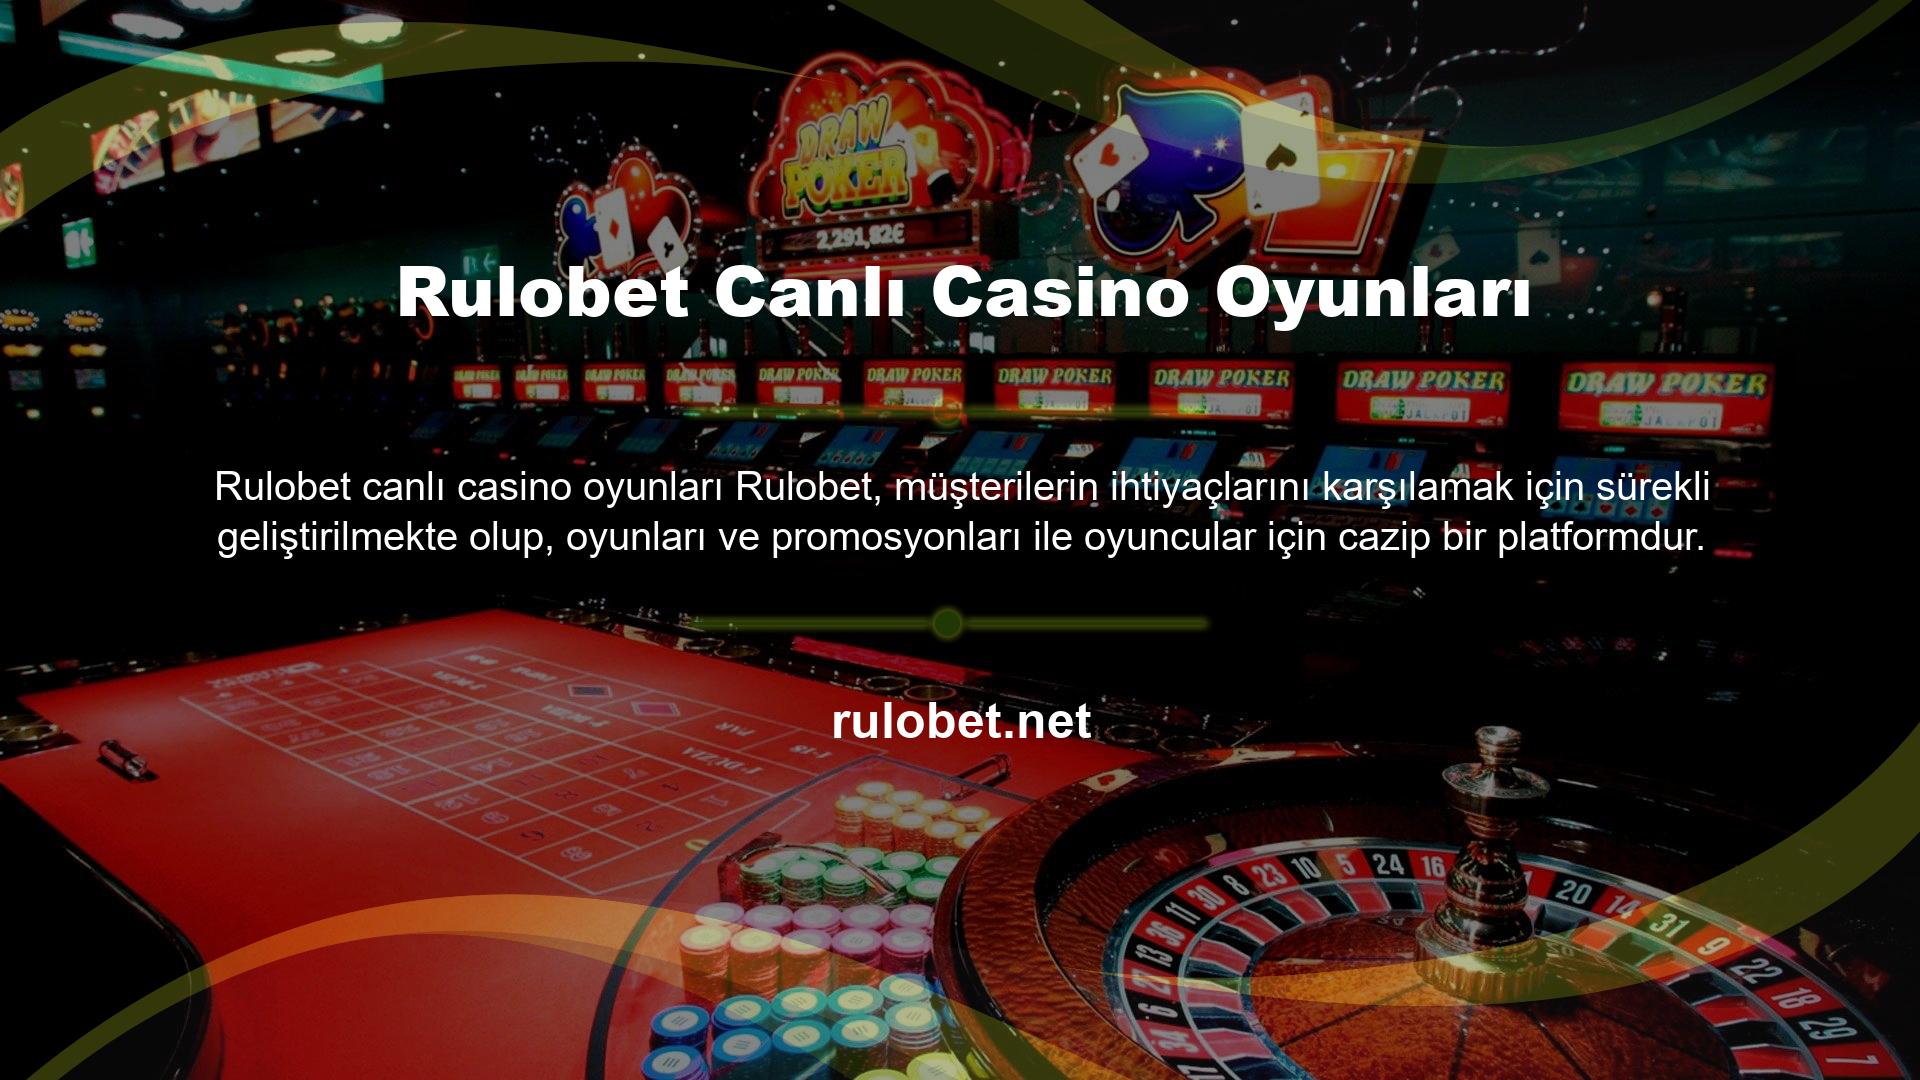 Özellikle spor bahisleri ve canlı casino oyunları ile popülerliğini artıran Rulobet, güvenilir ve heyecanlı bir deneyim yaşatır